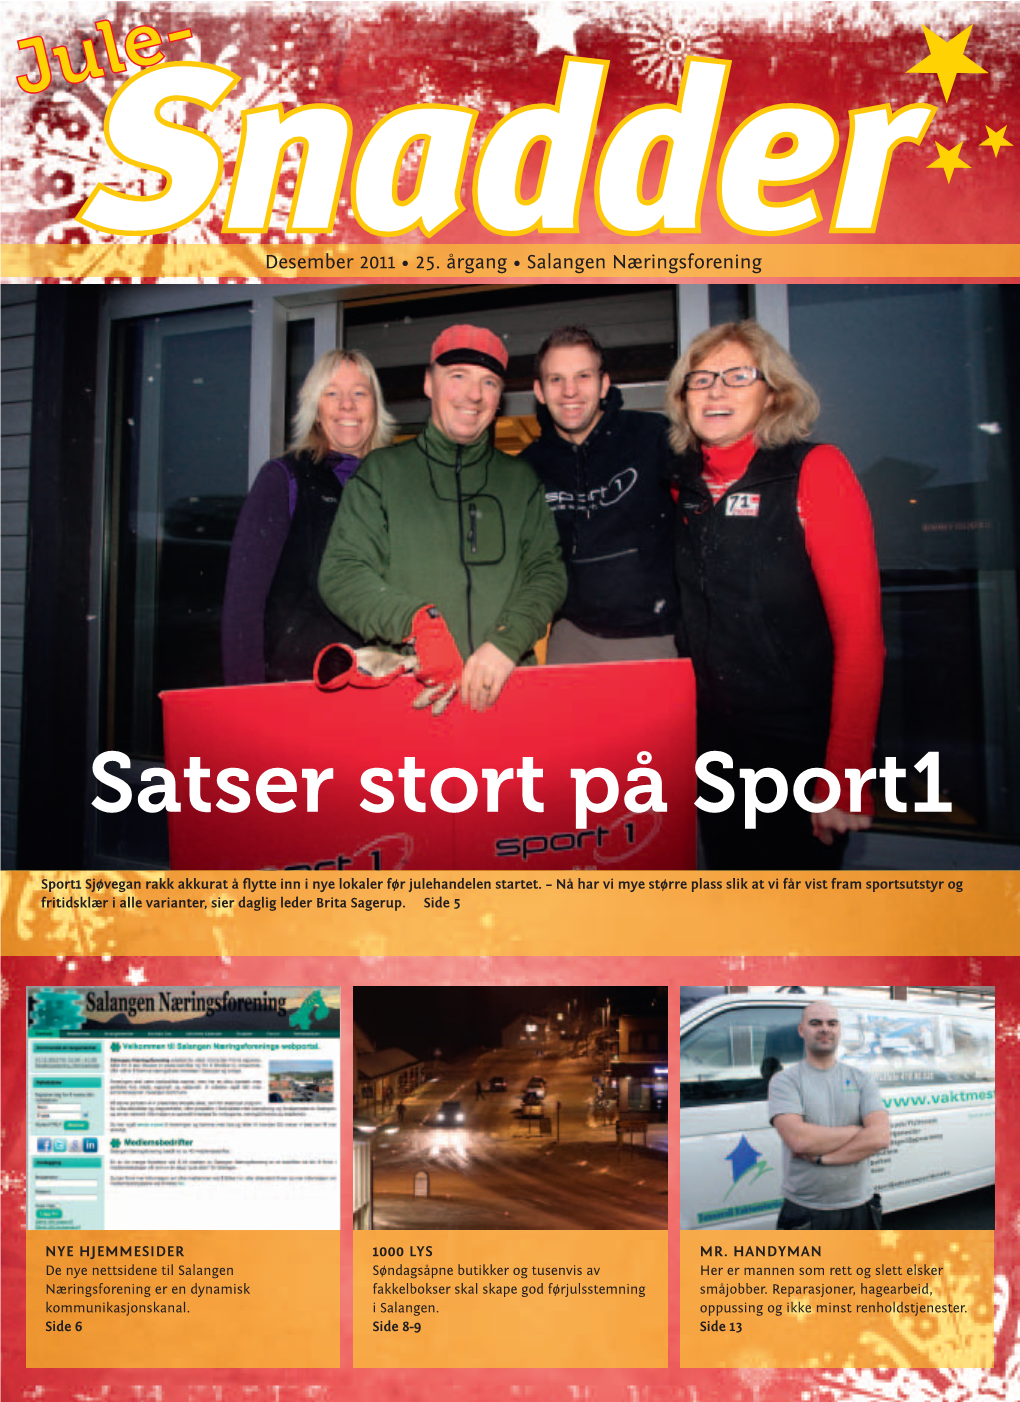 Satser Stort På Sport1